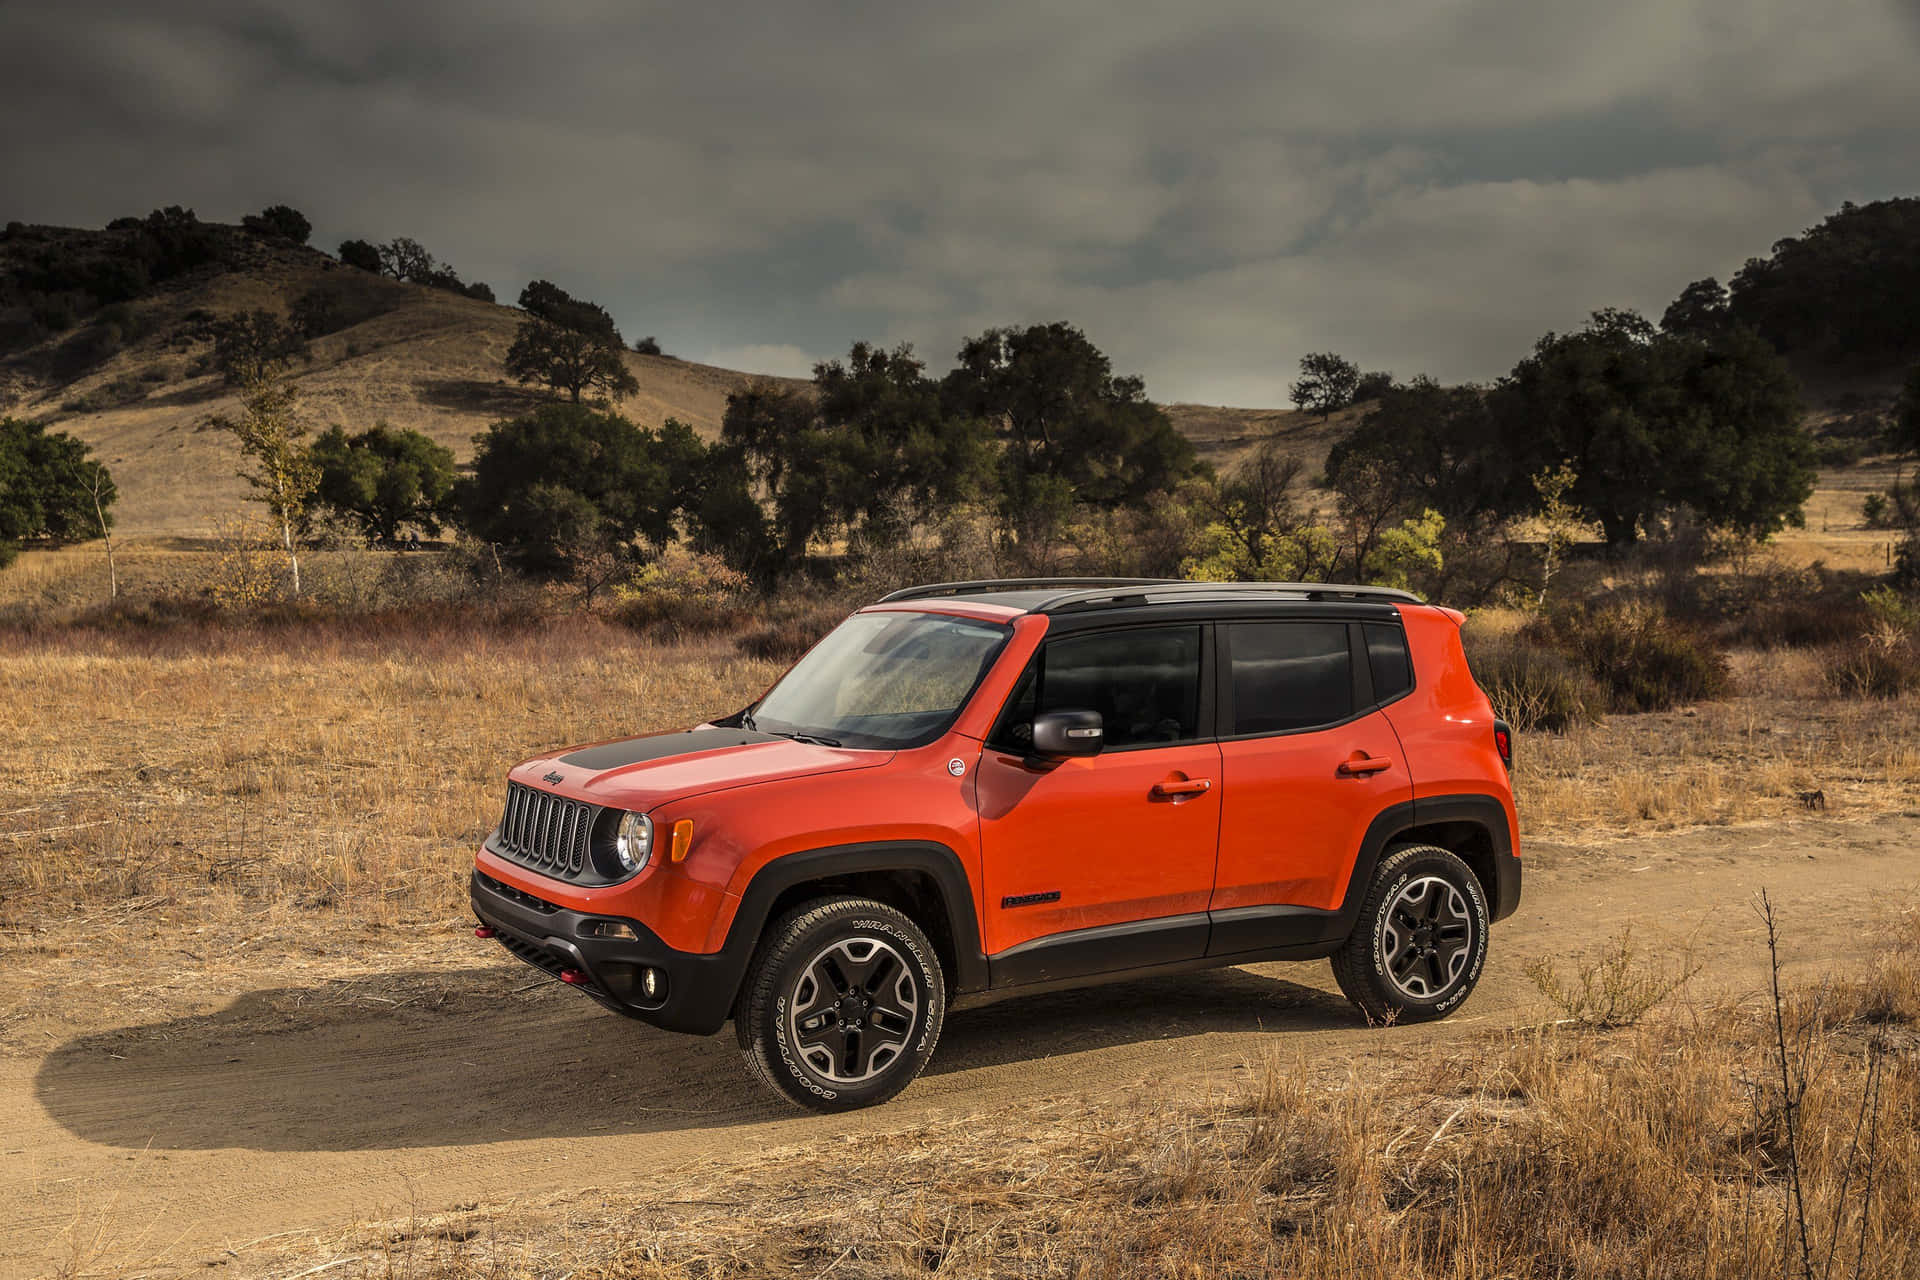 Jeep Renegade conquering off-road terrain Wallpaper